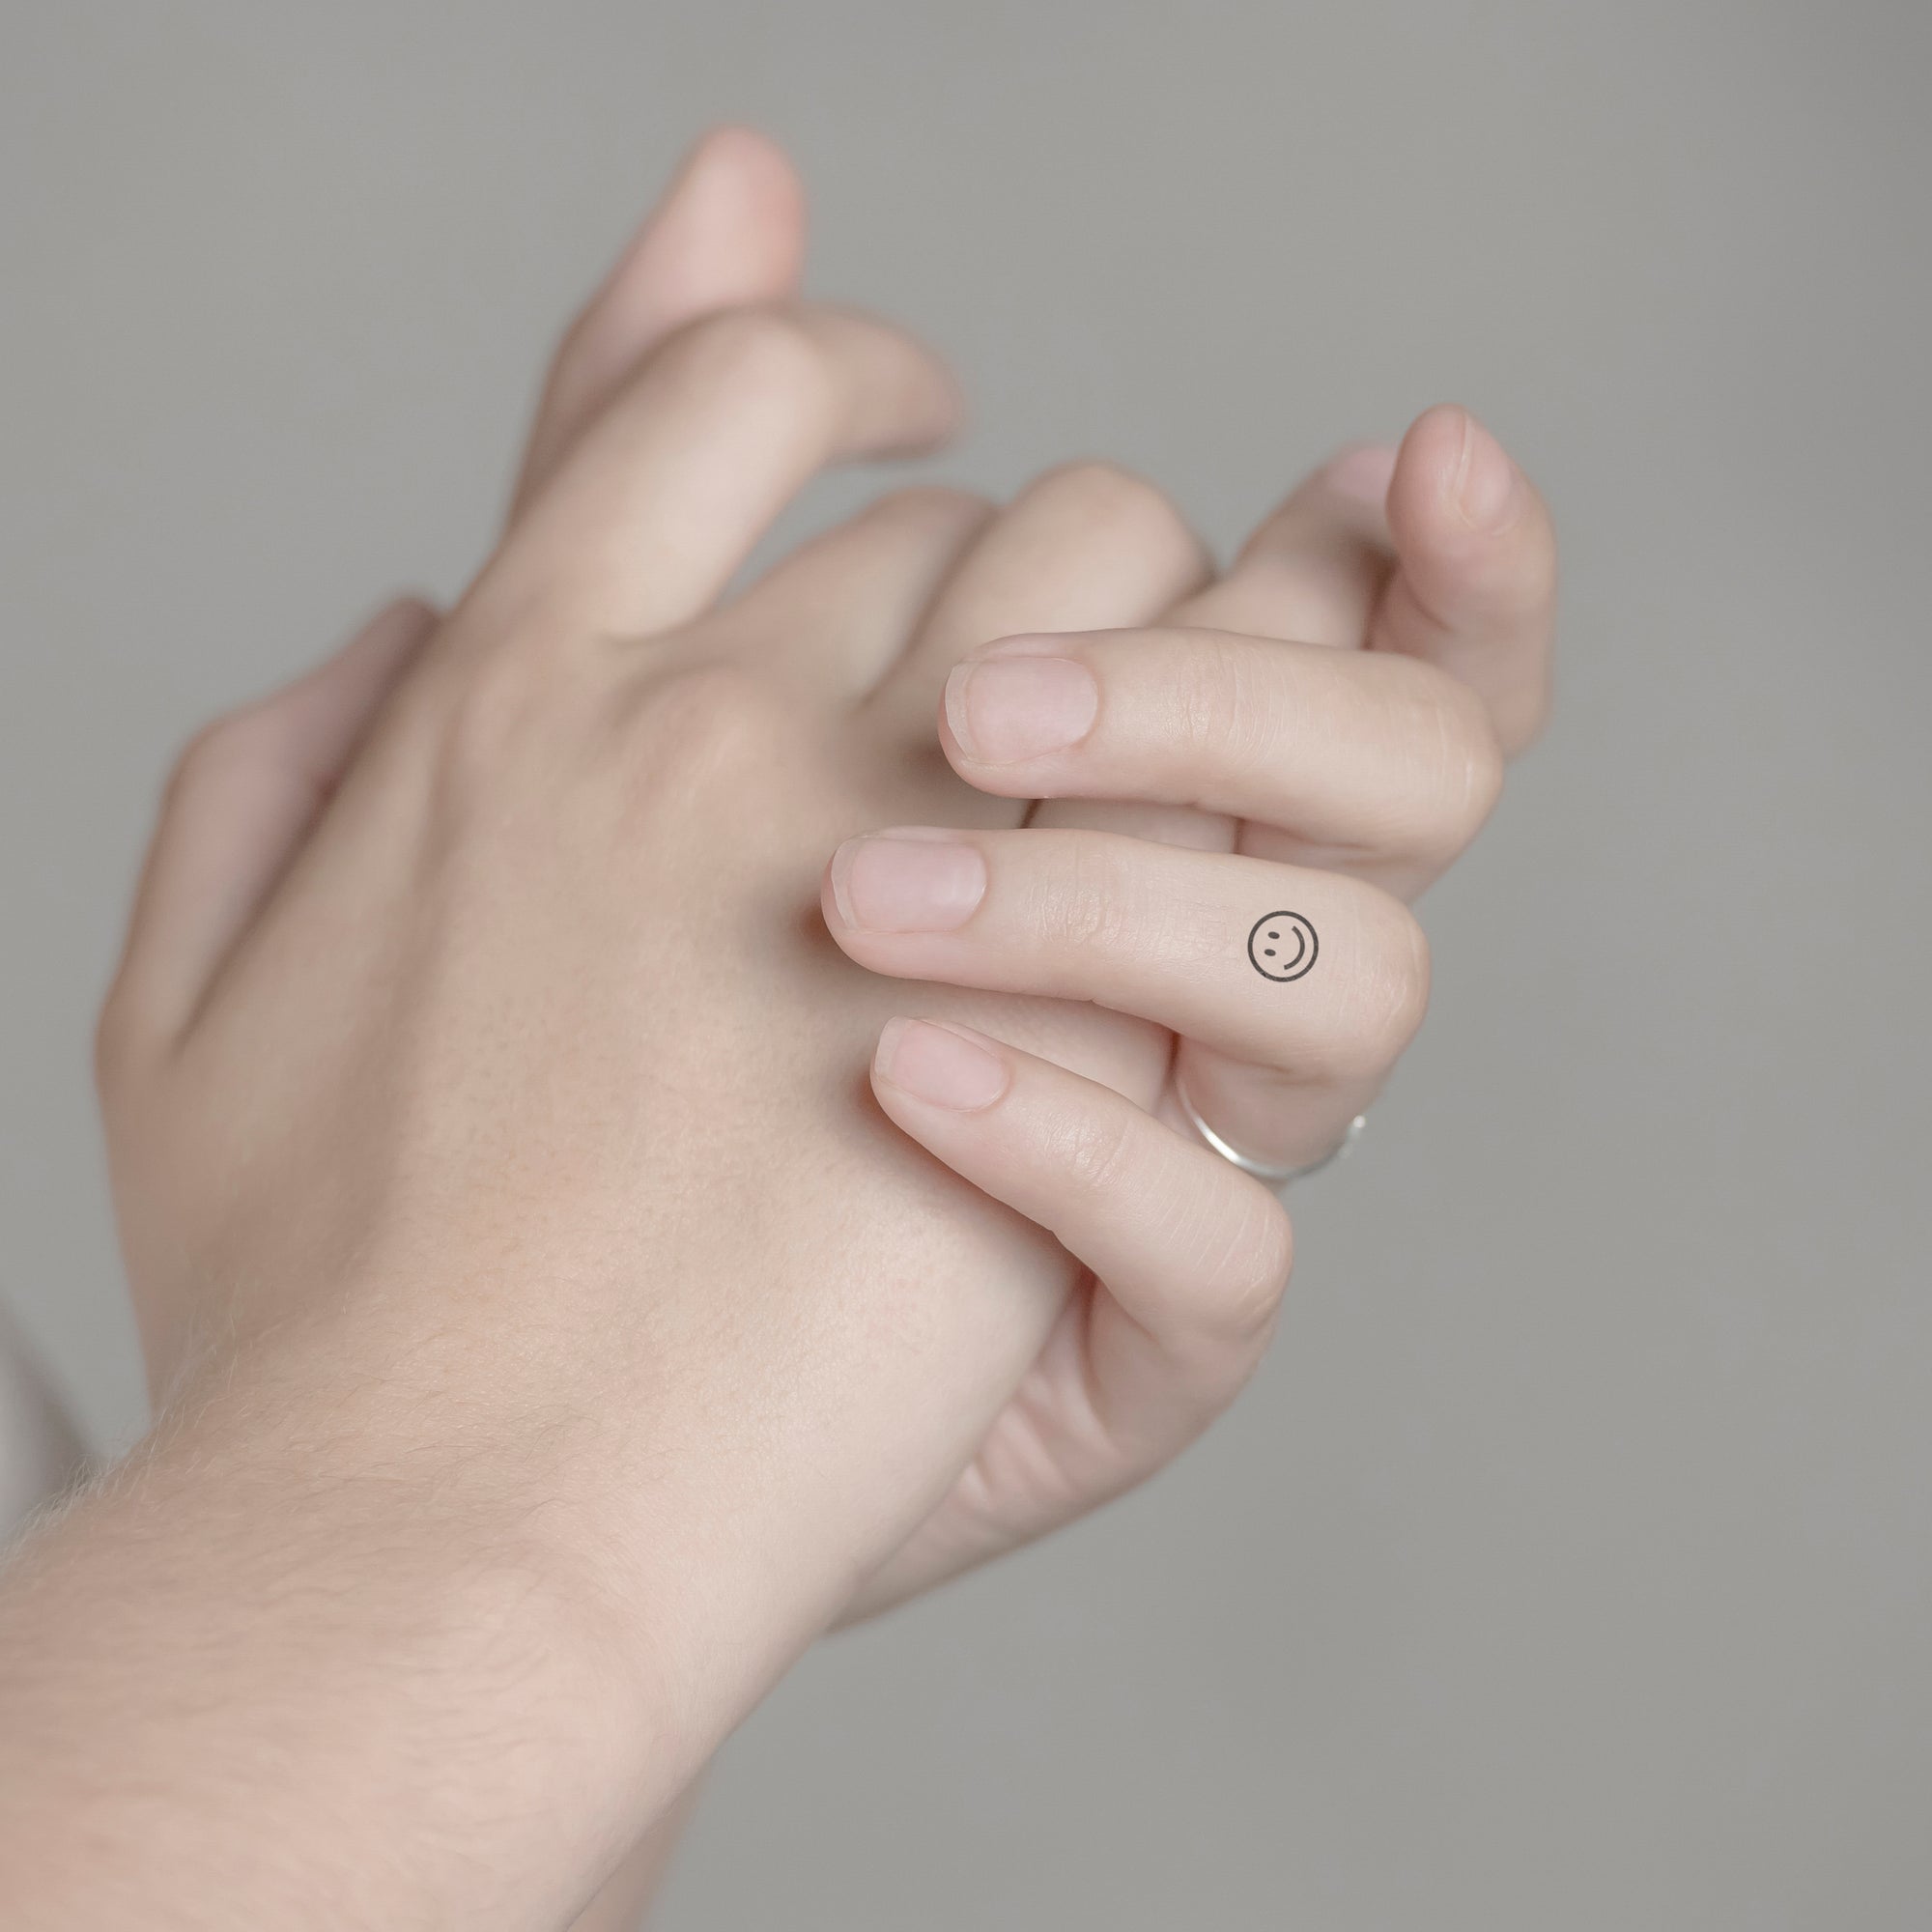 Smile Emoji Tattoo von minink, der Marke für temporäre Tattoos.